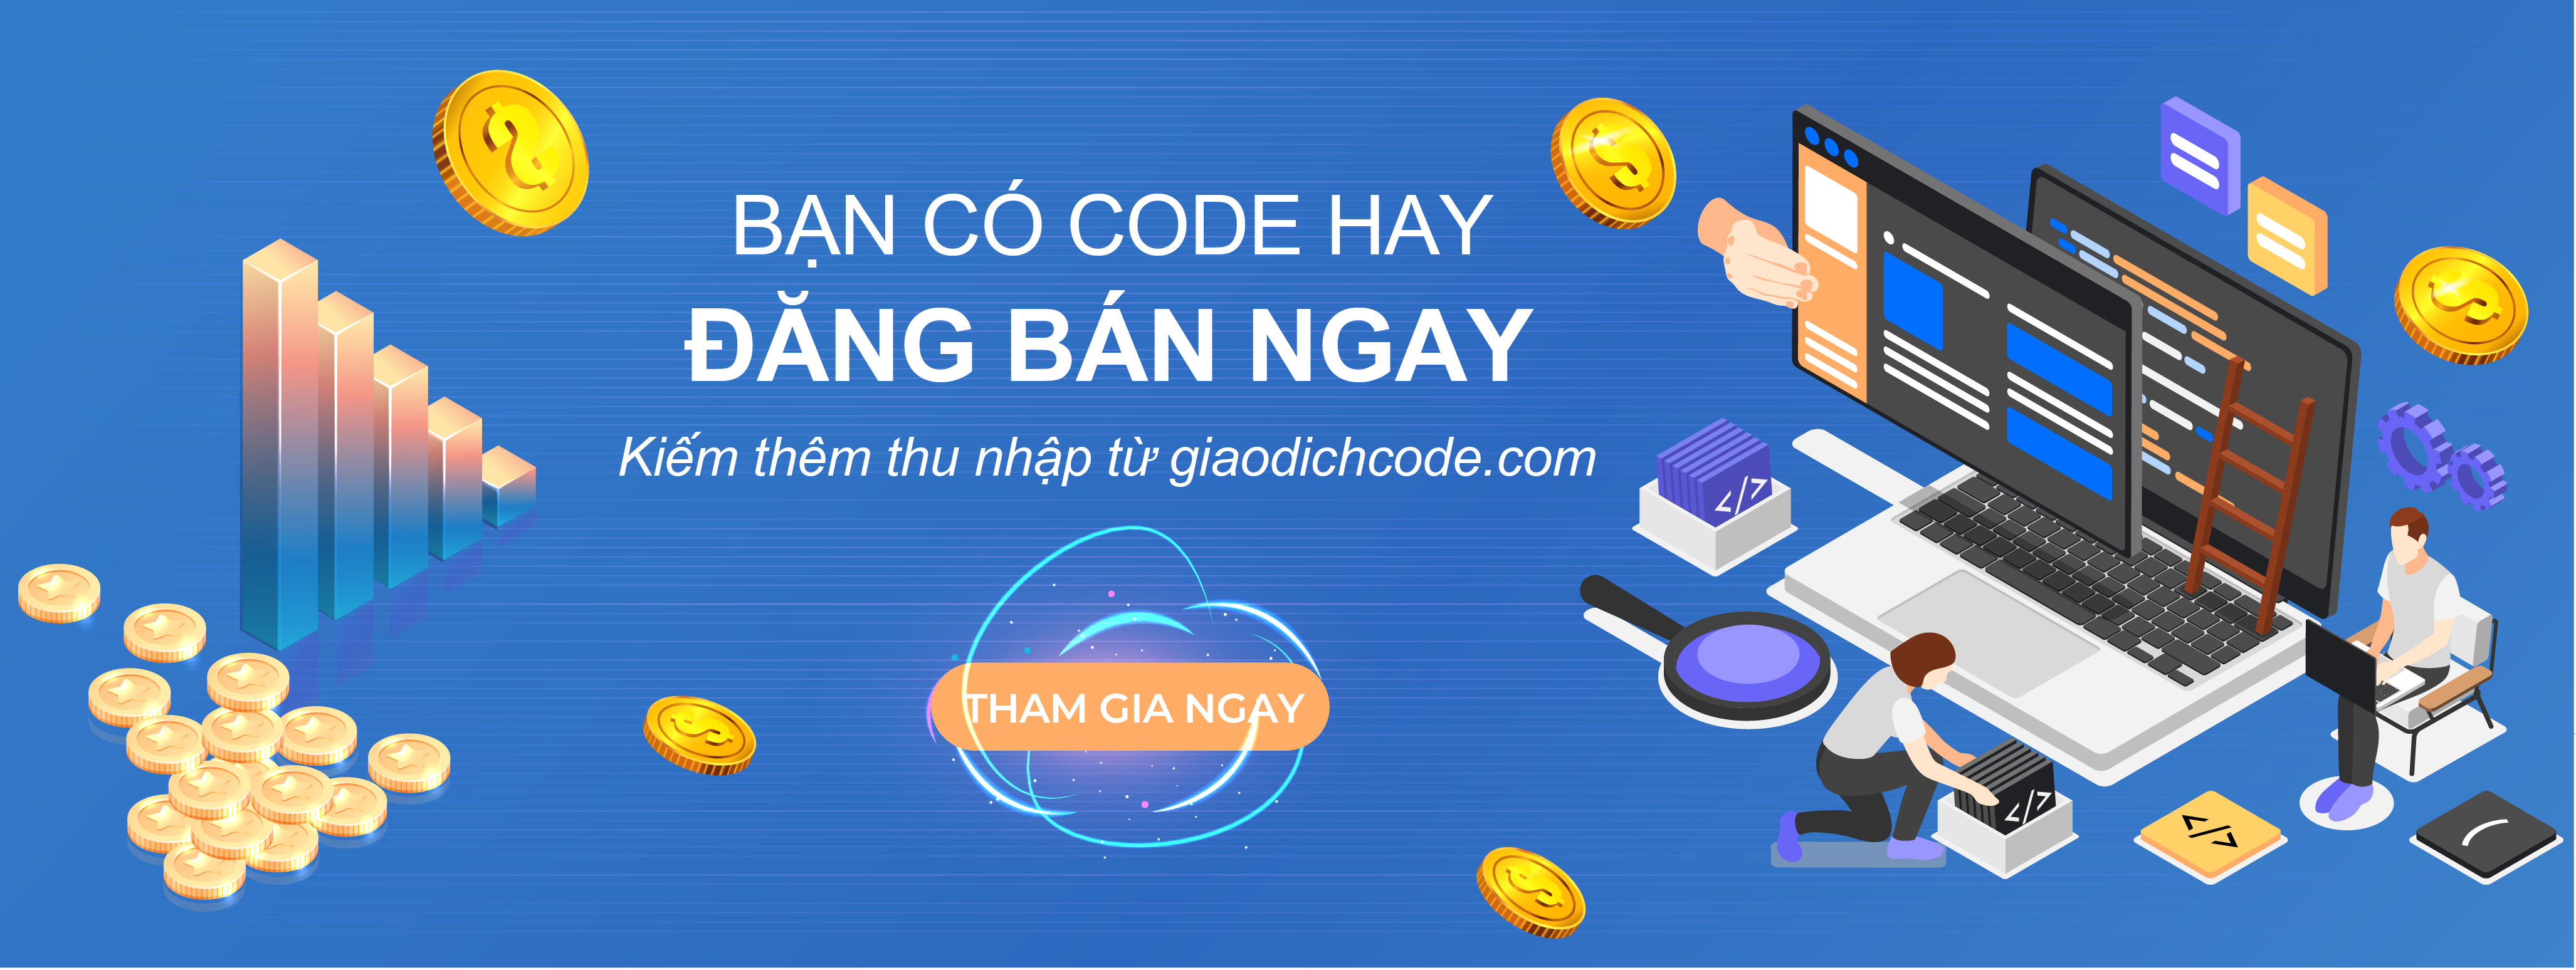 Đăng bán code kiếm thêm thu nhập tại giaodichcode.com